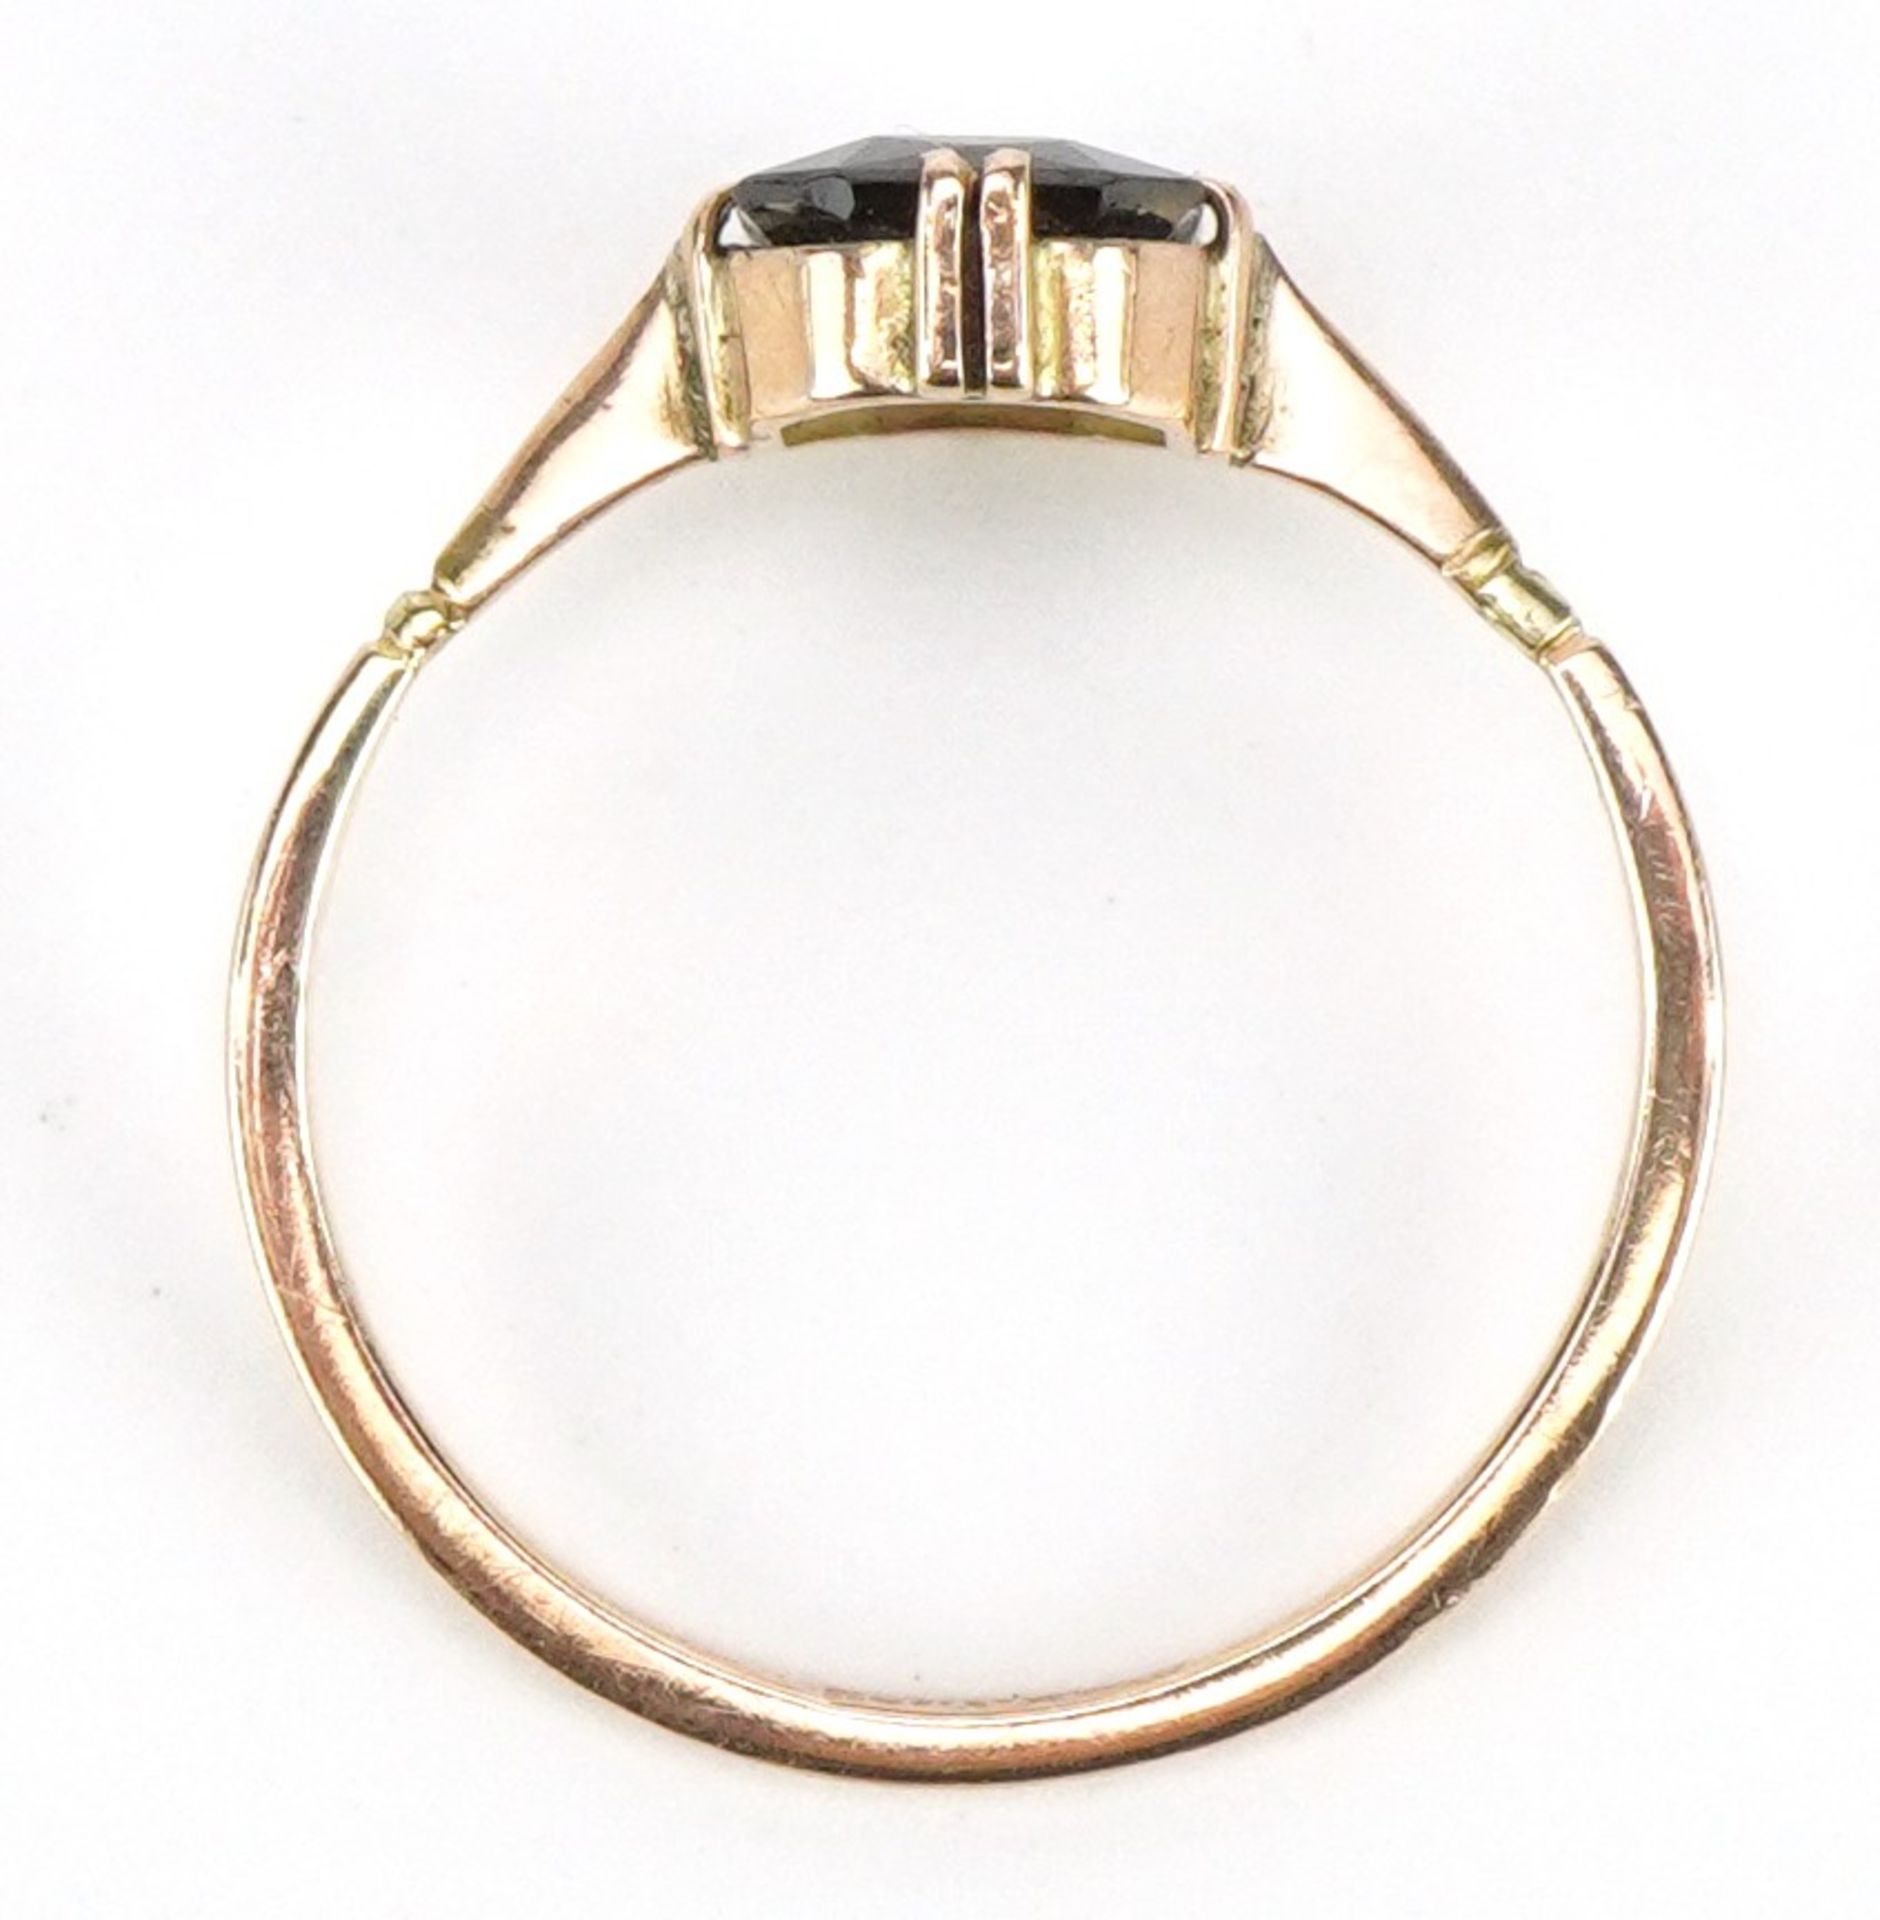 9ct gold Bohemian garnet ring, size M, 1.2g - Image 3 of 3